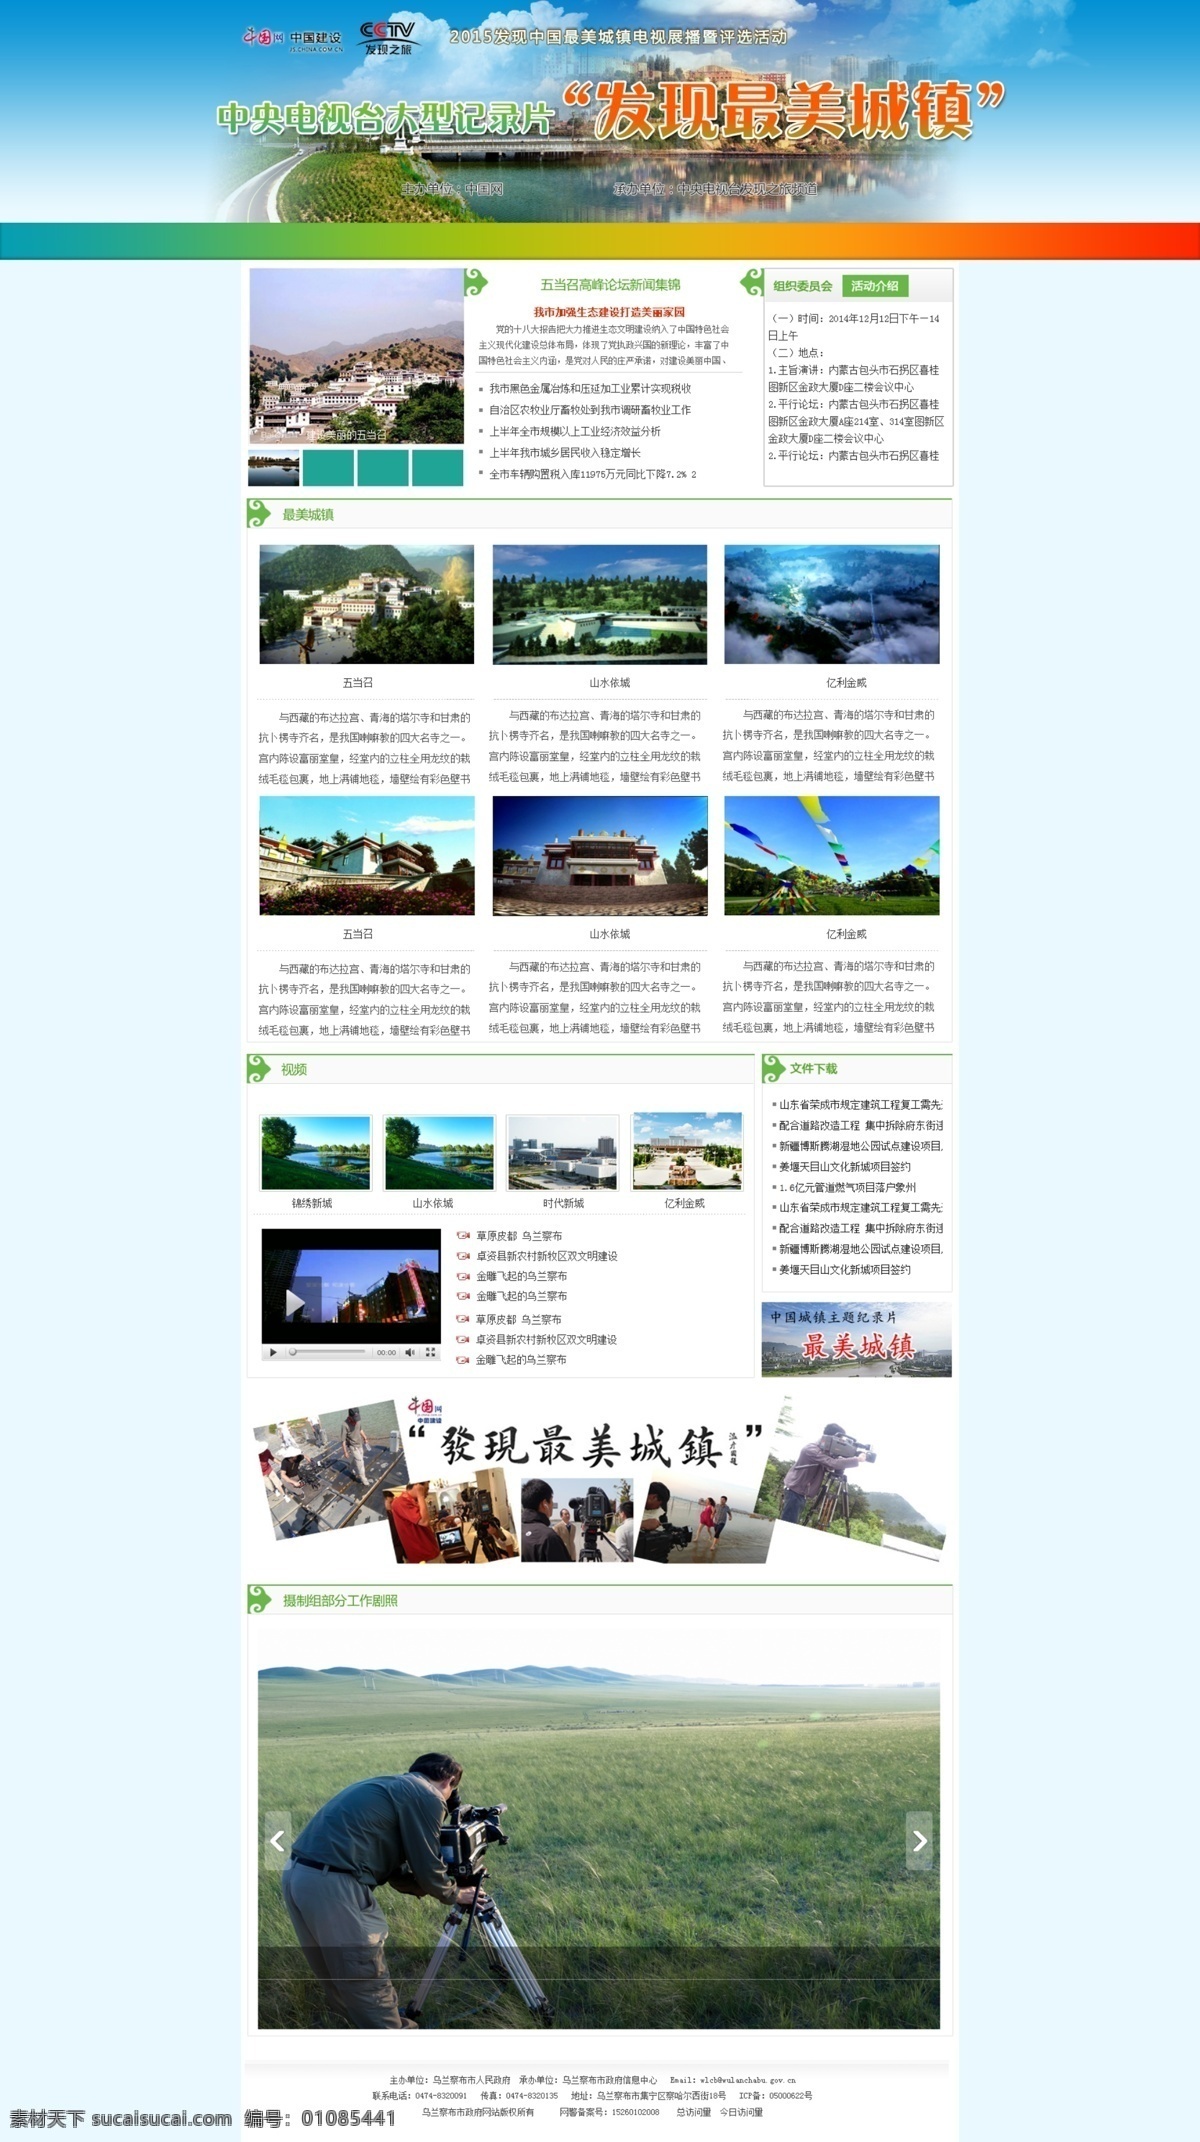 网页专题页面 网页模板 专题设计 蓝色背景 白色